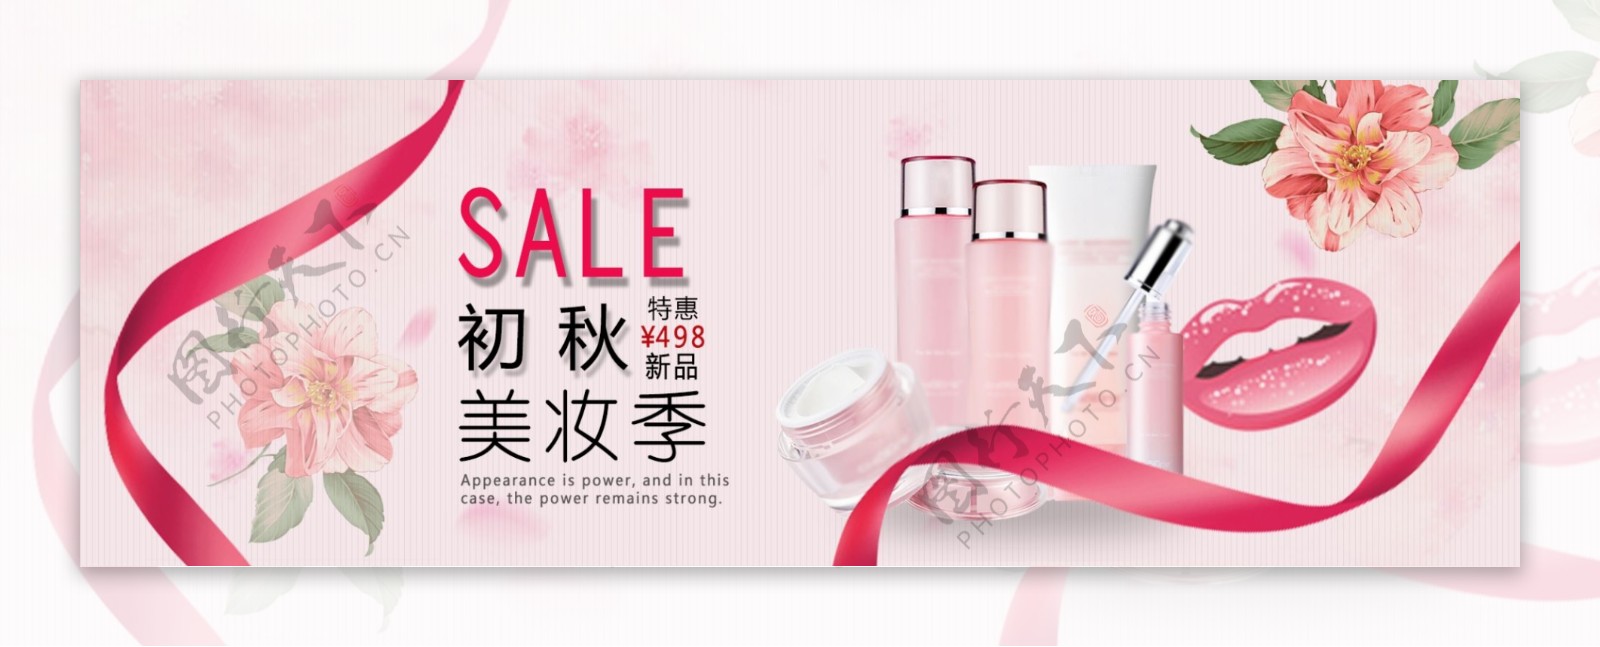 粉色浪漫美妆化妆品电商淘宝促销banner海报